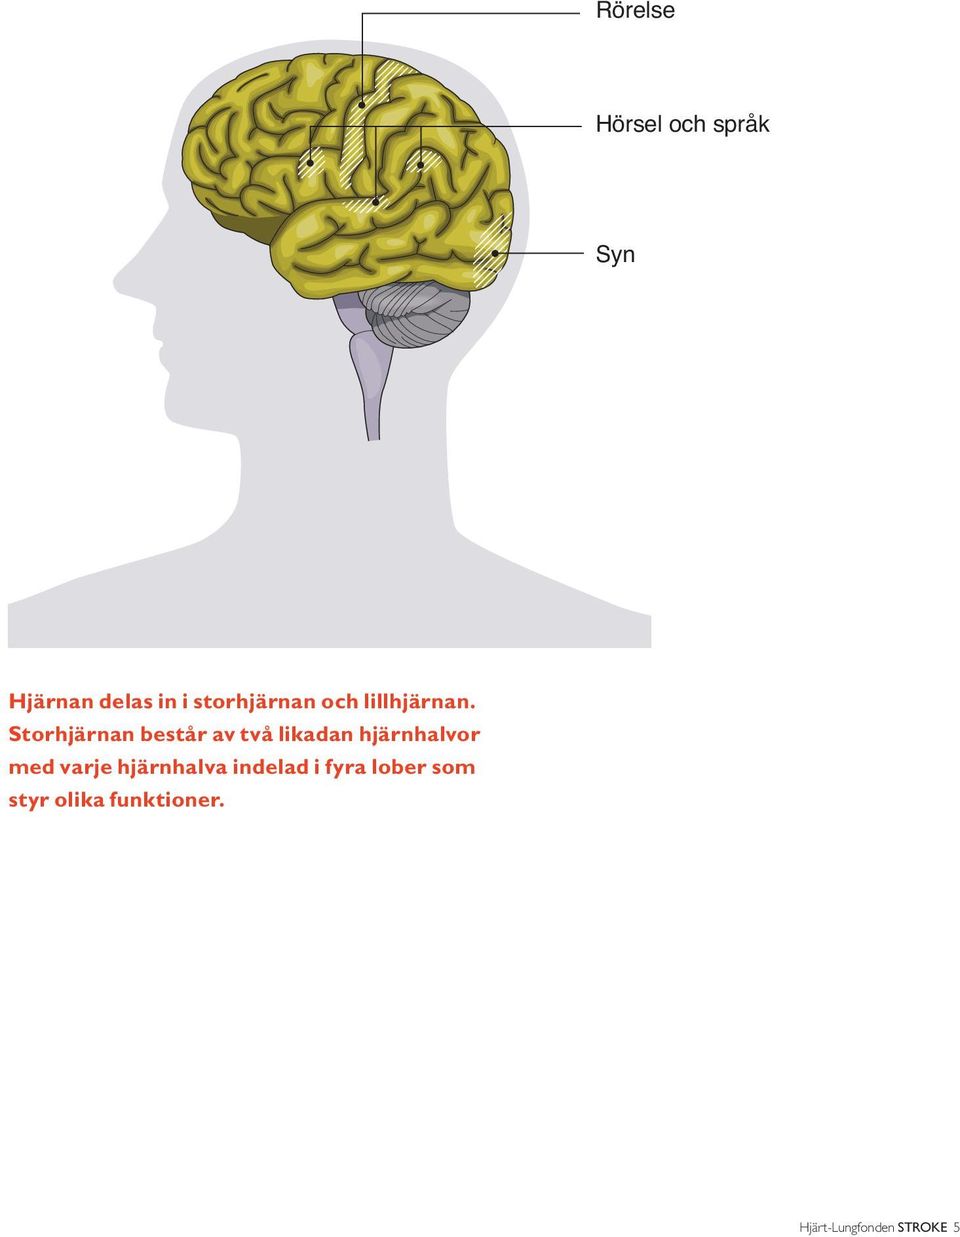 Storhjärnan består av två likadan hjärnhalvor med